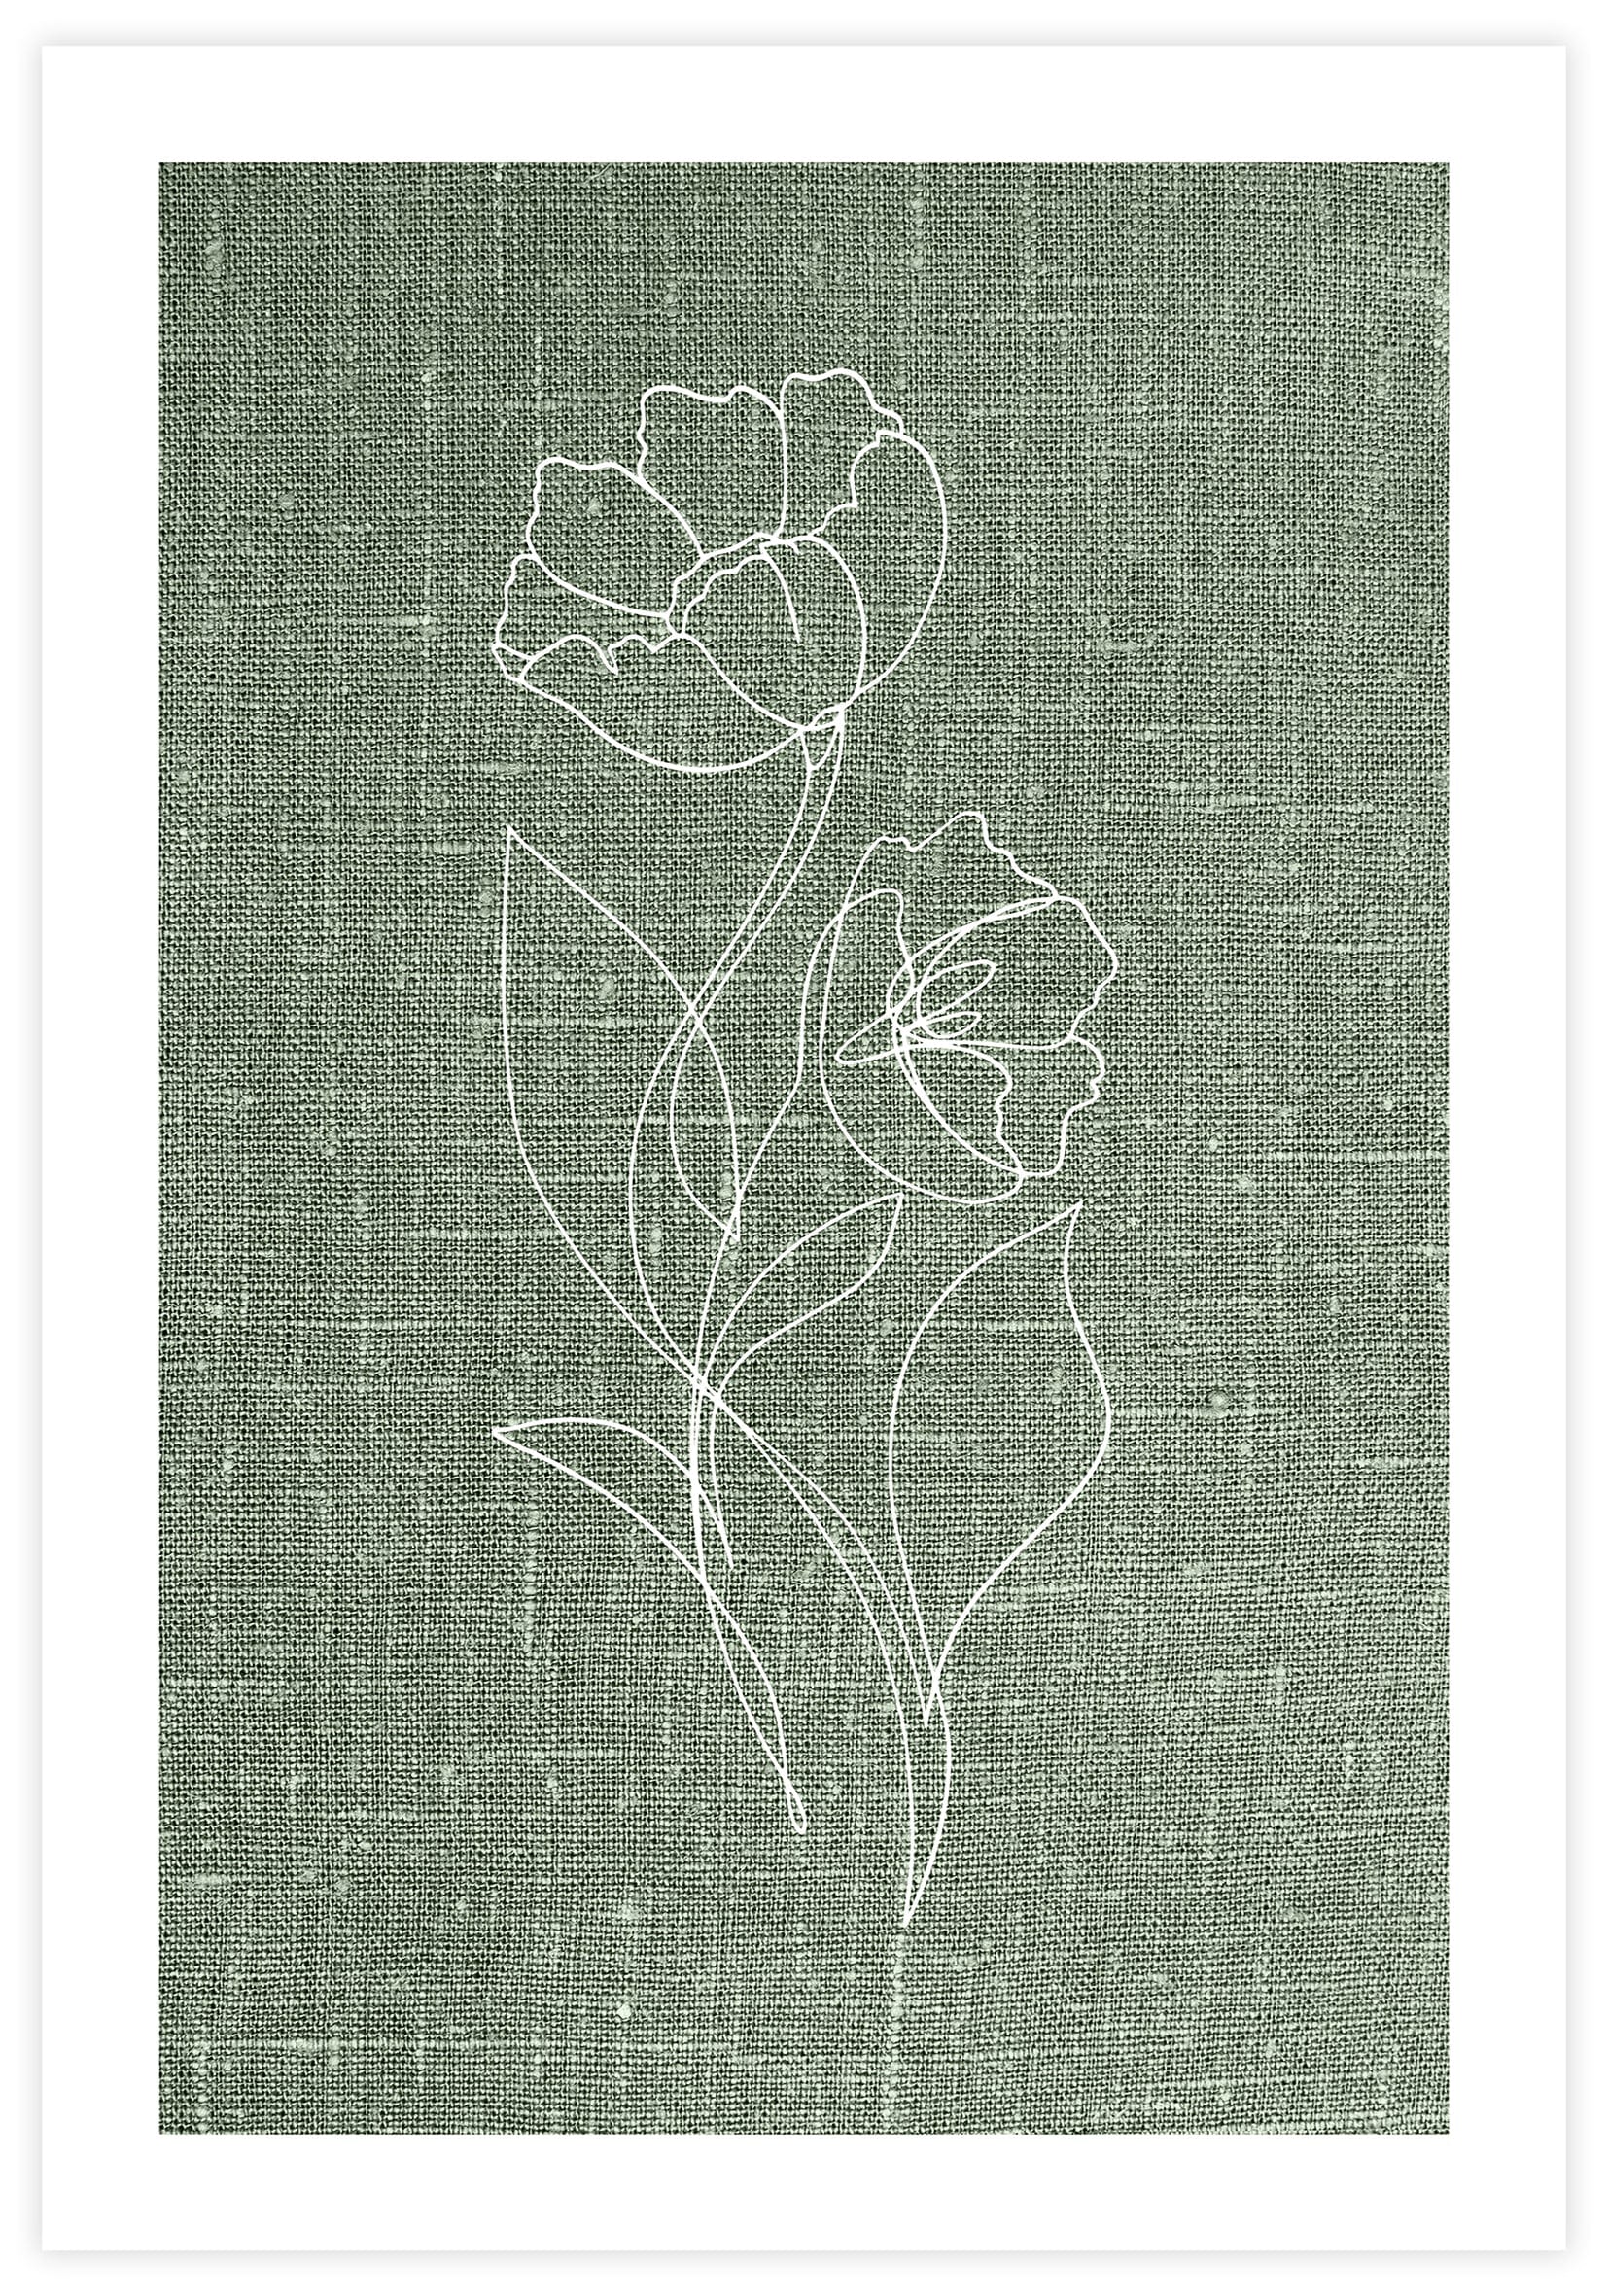 Flower Linen Poster